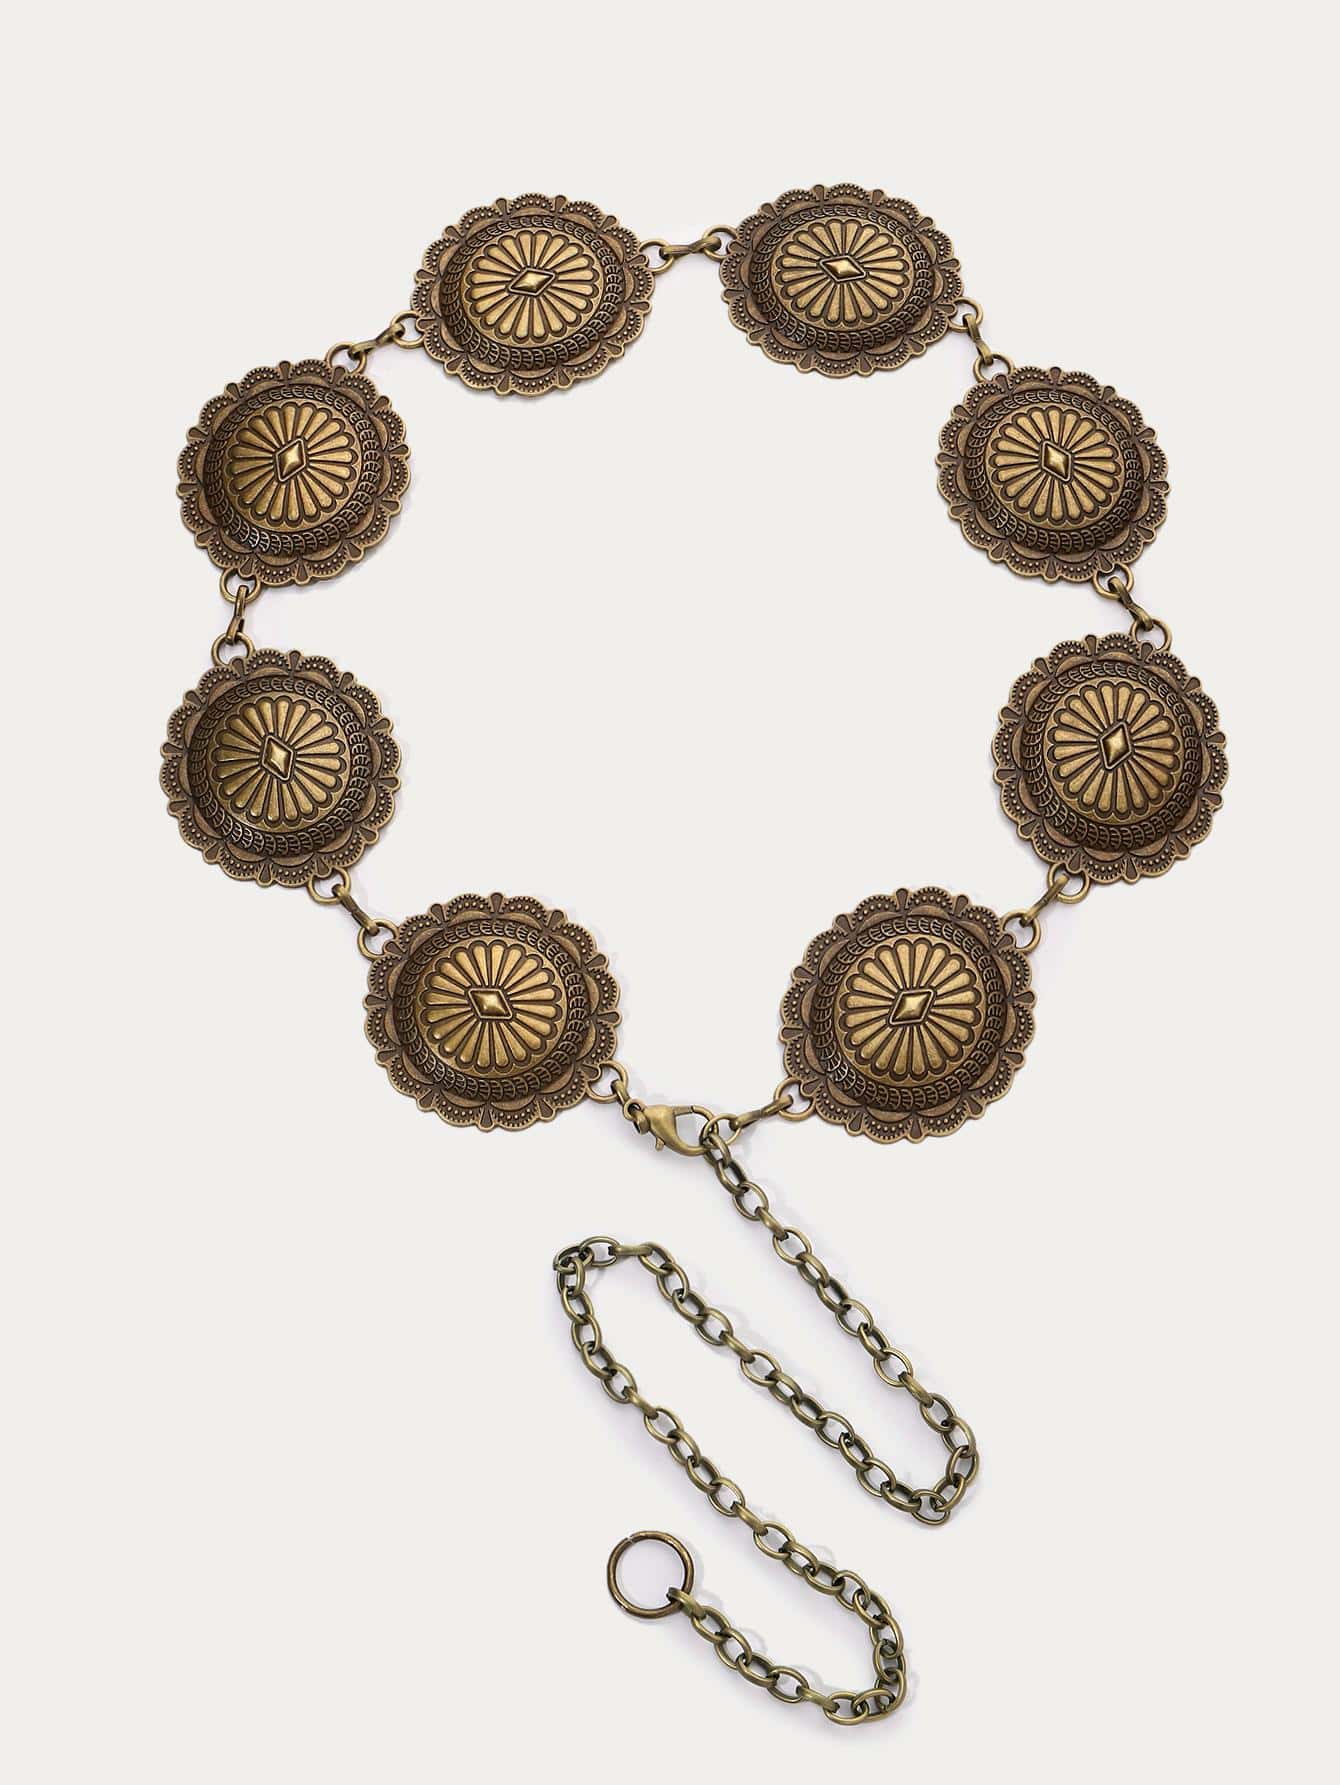 1 шт. женский круглый декор, винтажный пояс-цепочка для украшения платья, бронза